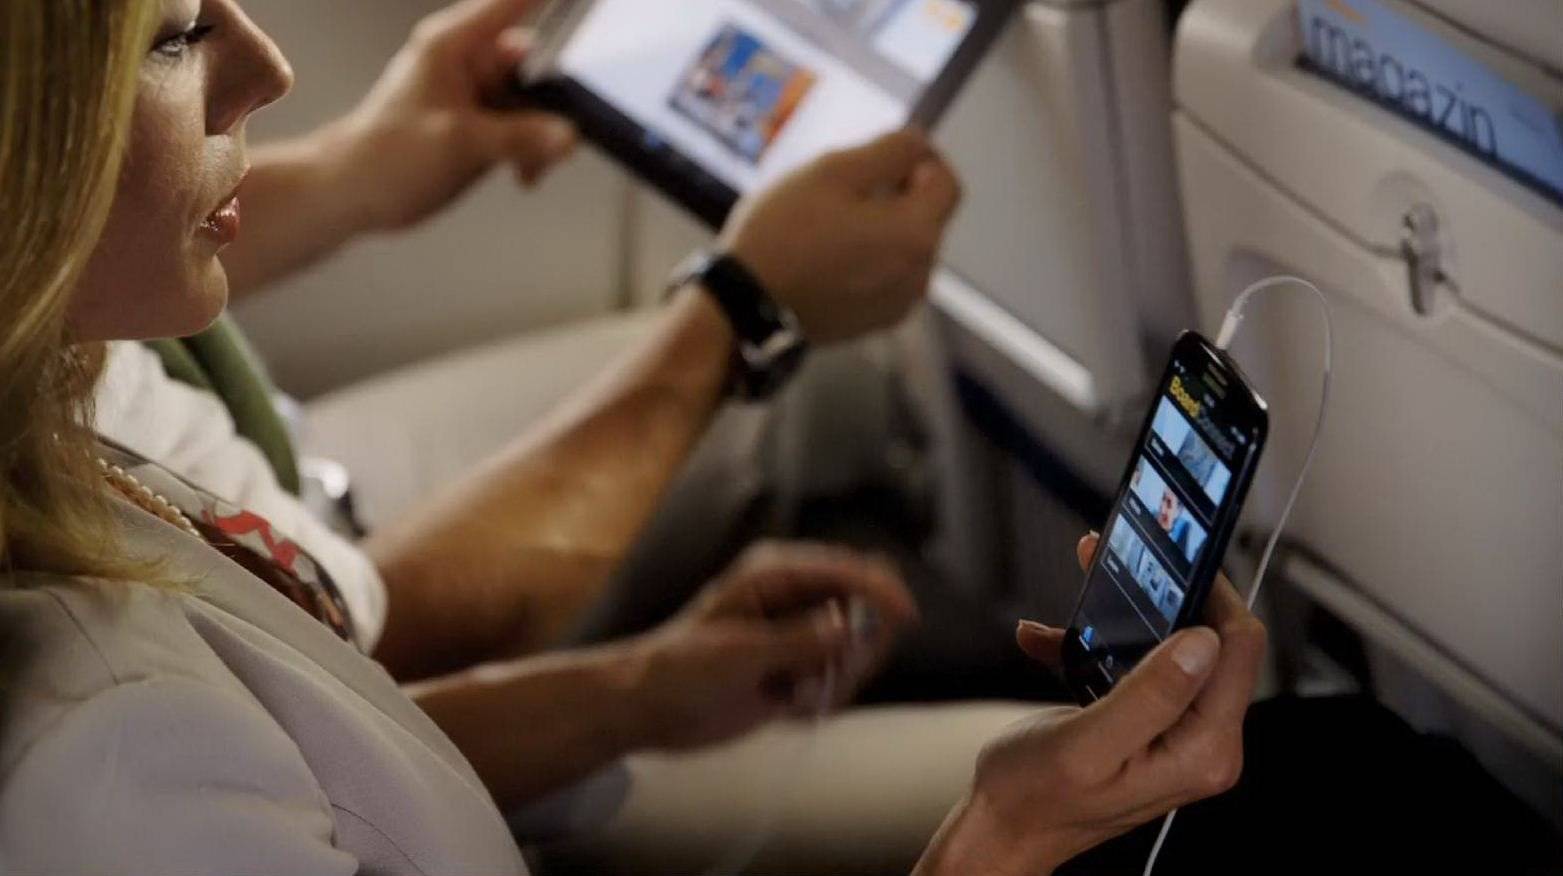 Можно ли в самолете пользоваться телефоном и интернетом во время полета